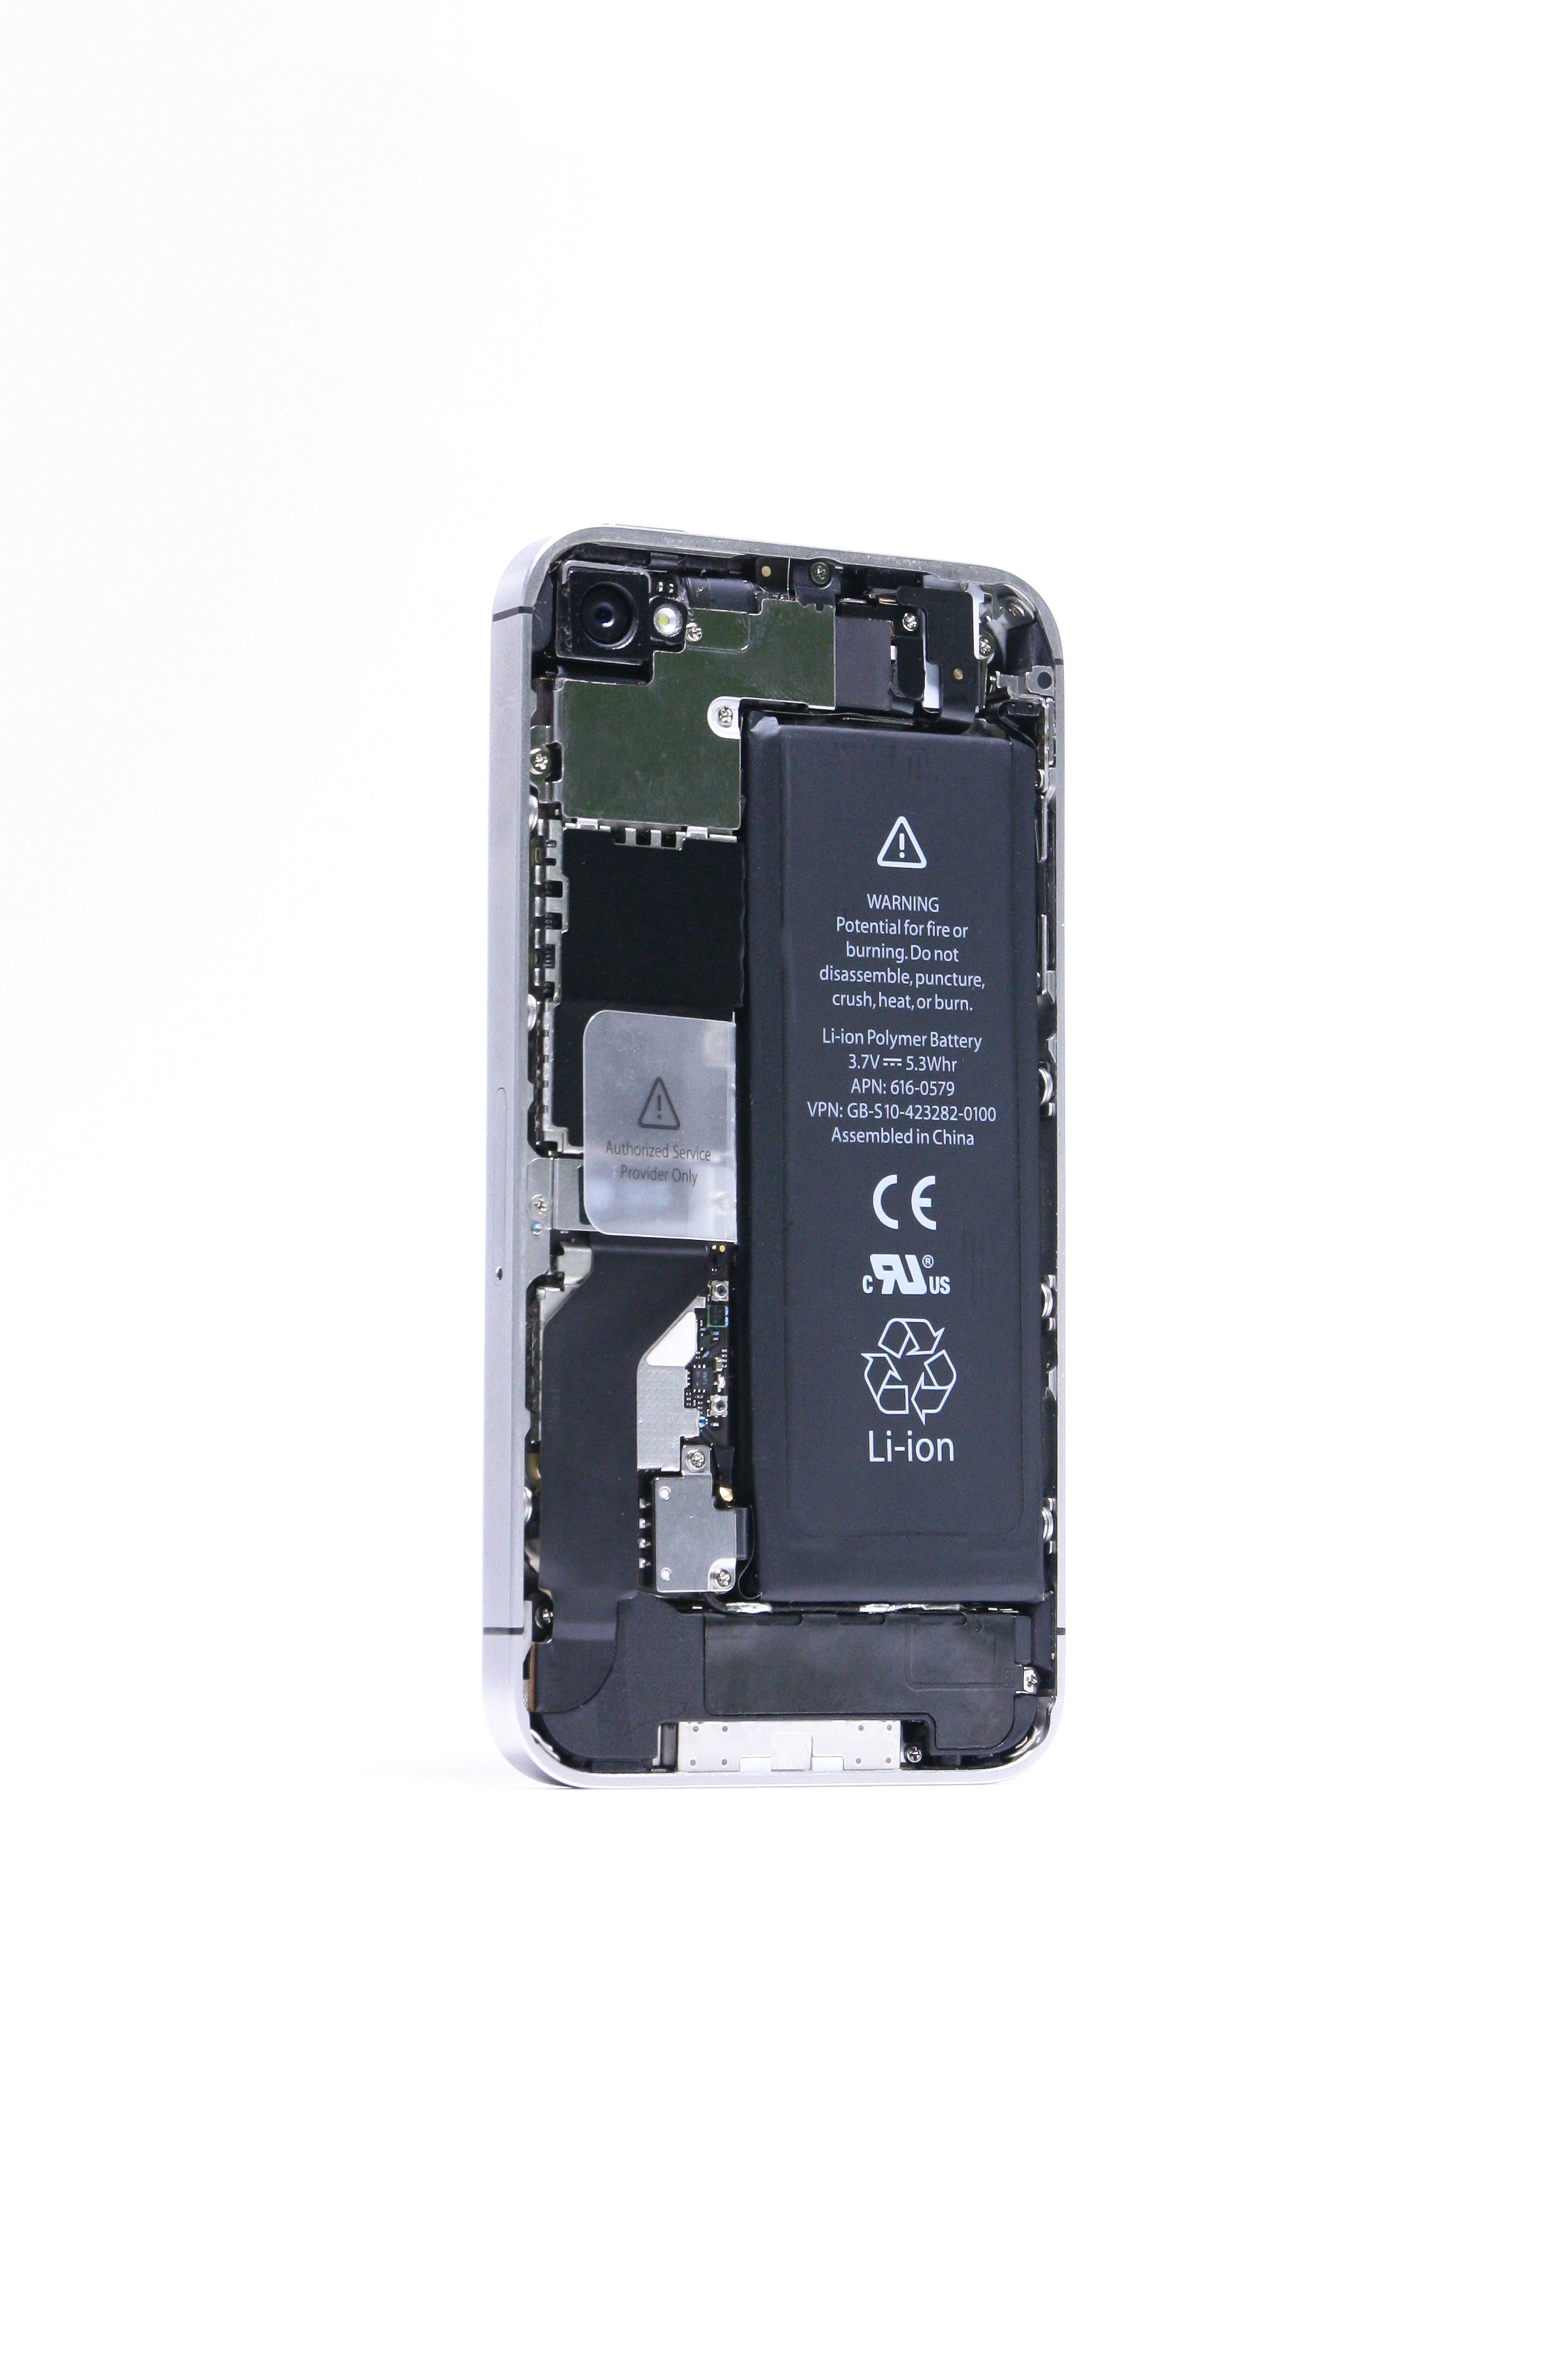 Bateria Inchada No IPhone – iPhone Blog – Dicas sobre o mundo Apple